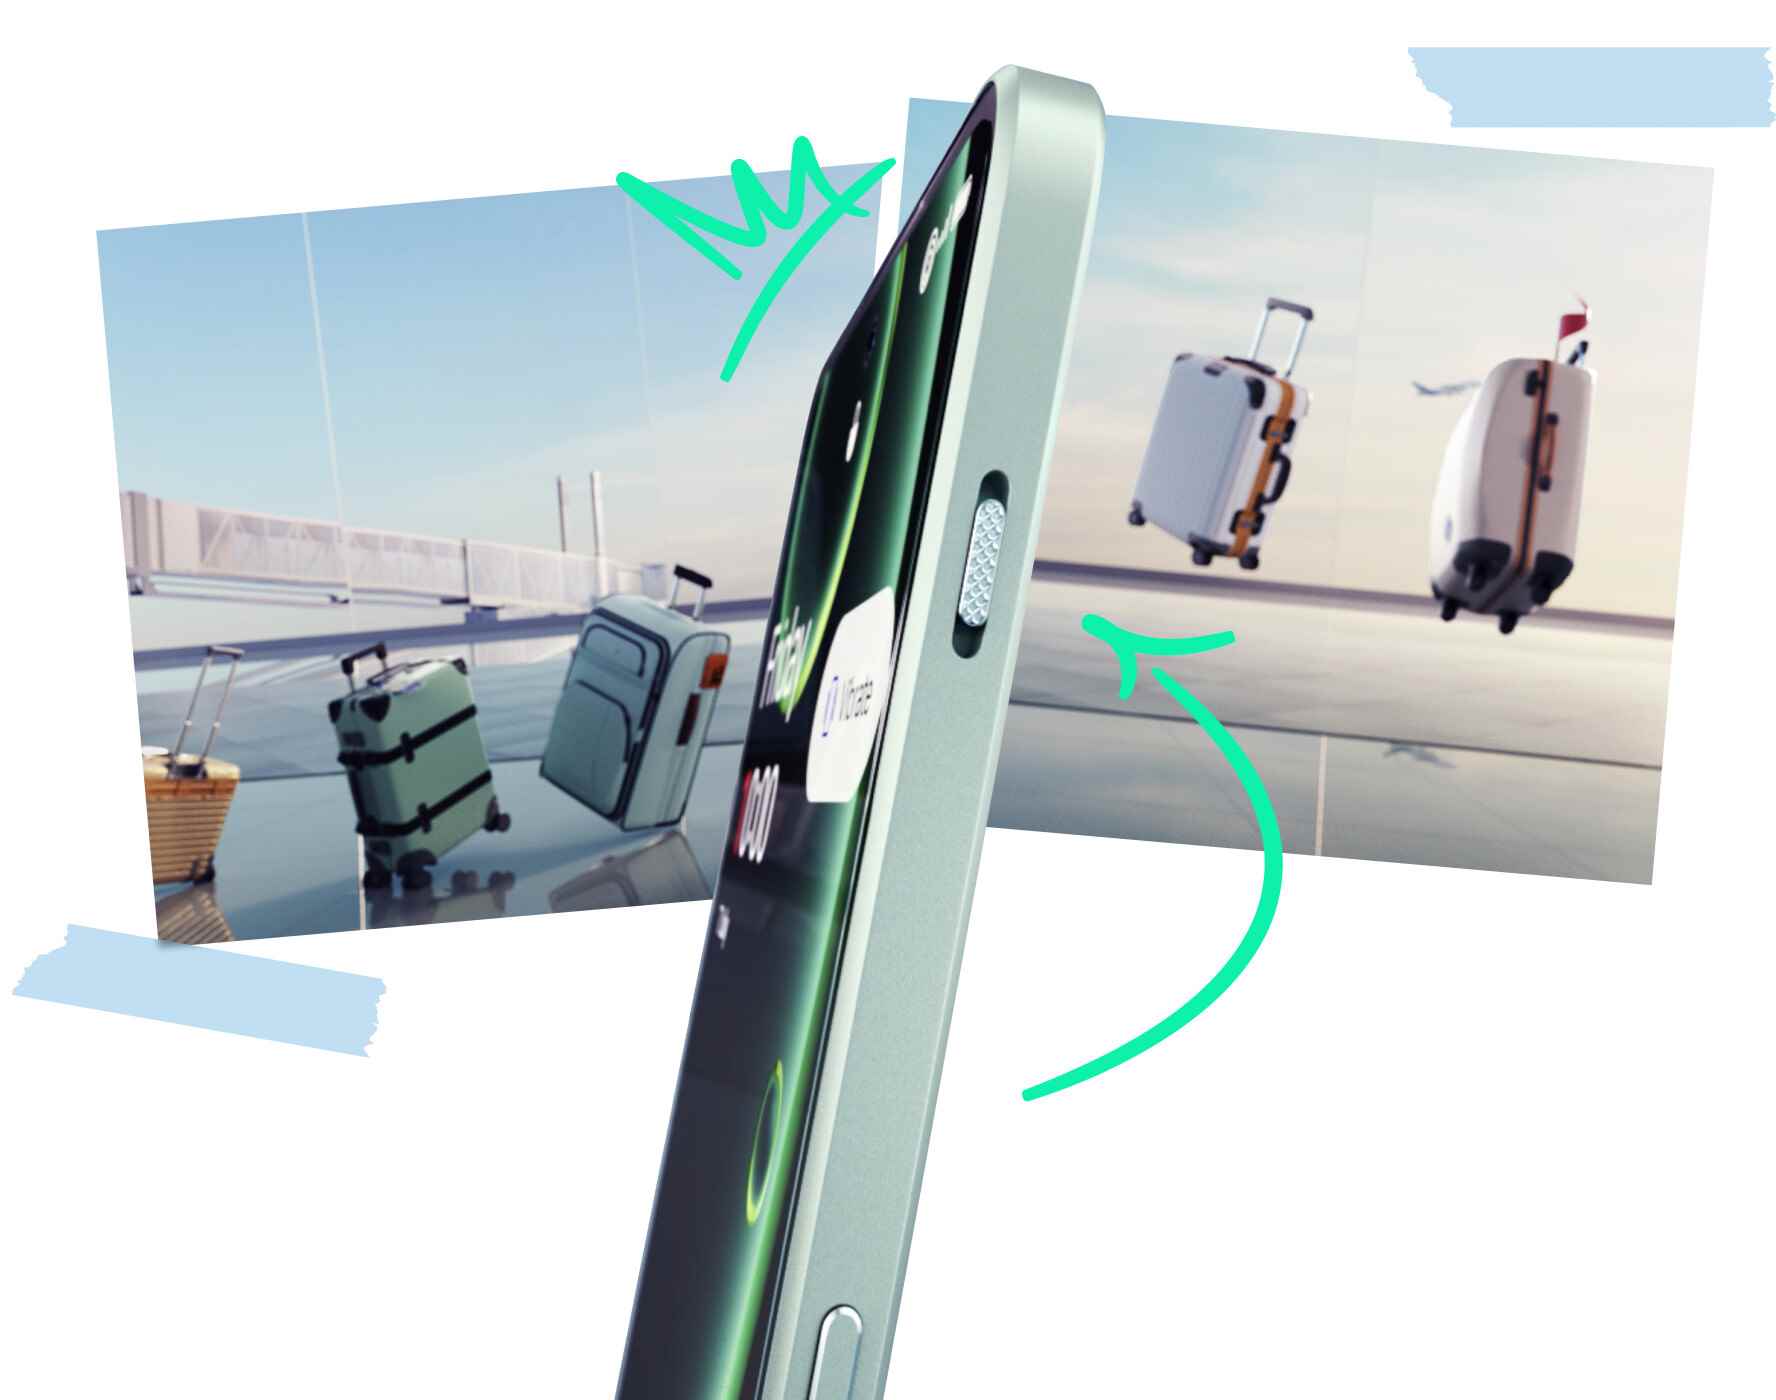 Görüntü Kredisi–OnePlus - OnePlus Nord 3 resmi olarak yayınlandı: 6,7 inç 120 Hz ekran, 50 MP kamera, 5.000 mAh süper hızlı şarj olan pil